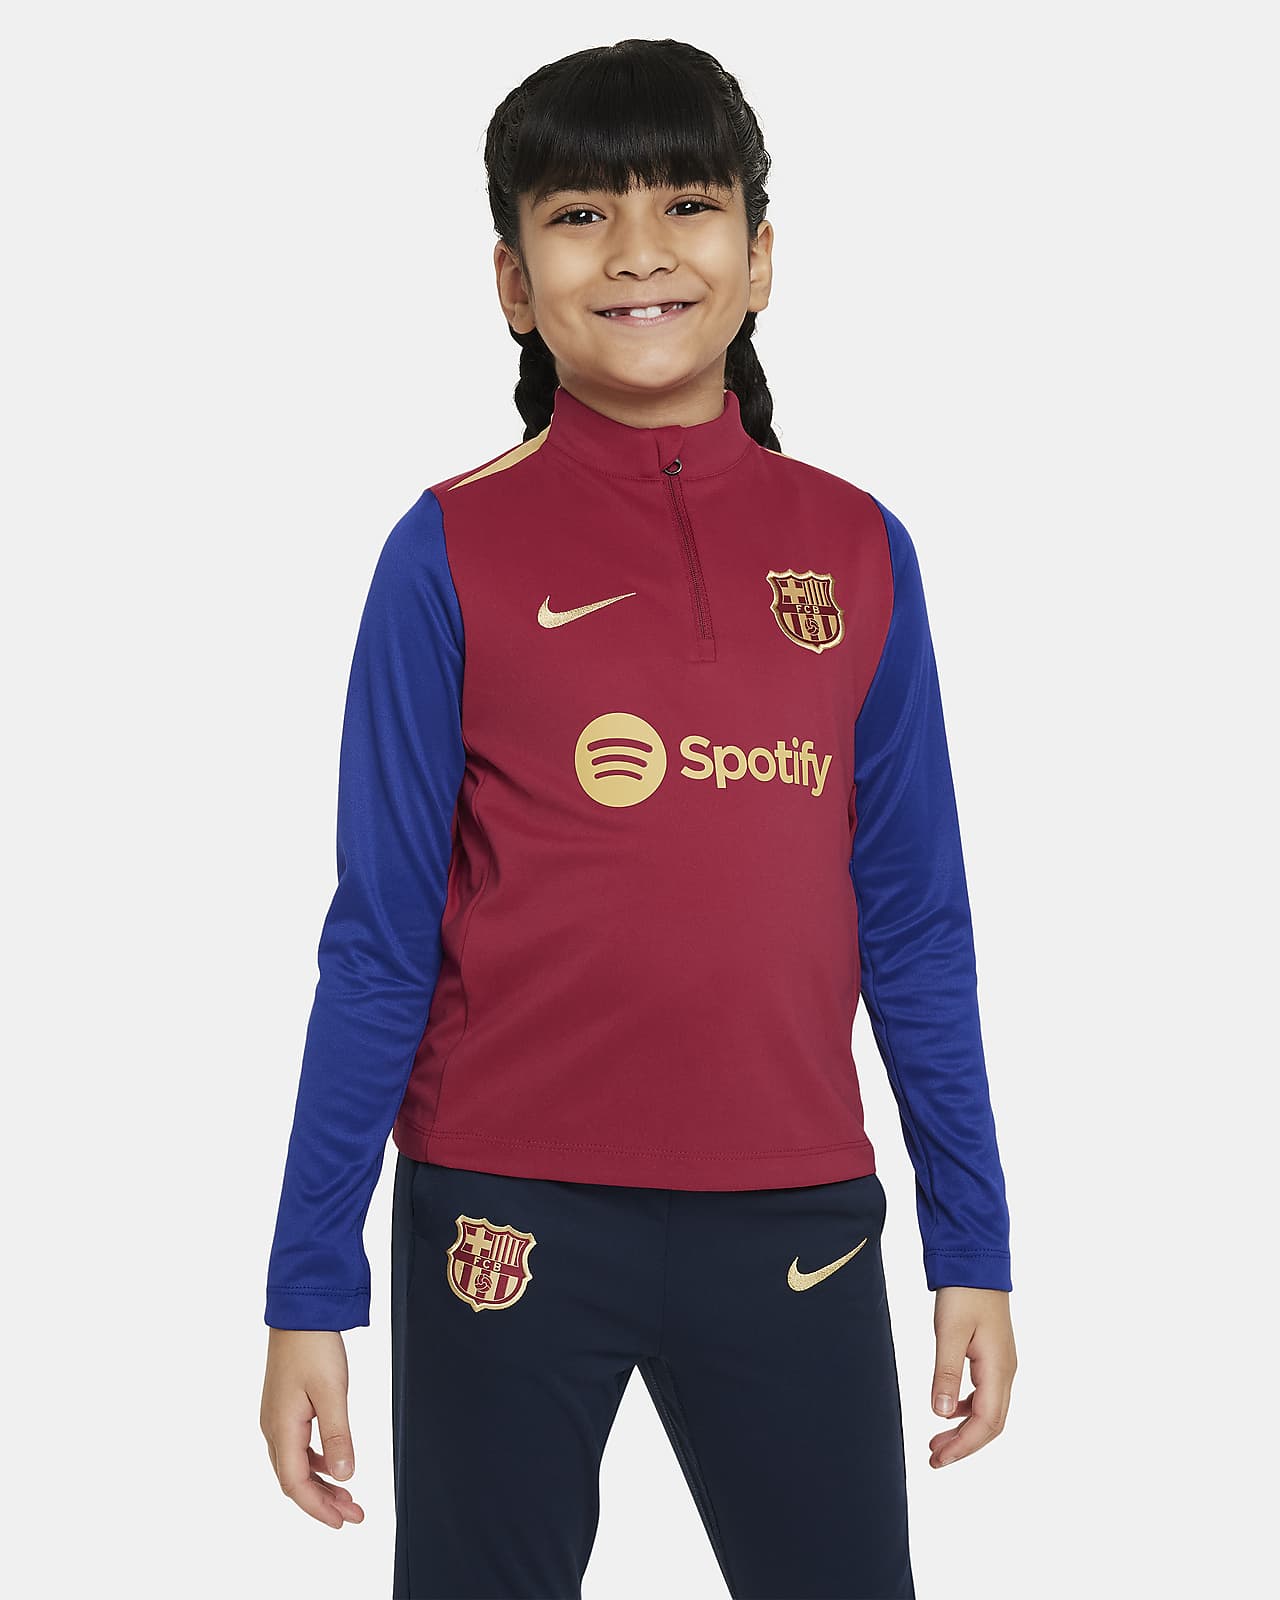 Ποδοσφαιρική μπλούζα προπόνησης Nike Dri-FIT Μπαρτσελόνα Academy Pro για μικρά παιδιά